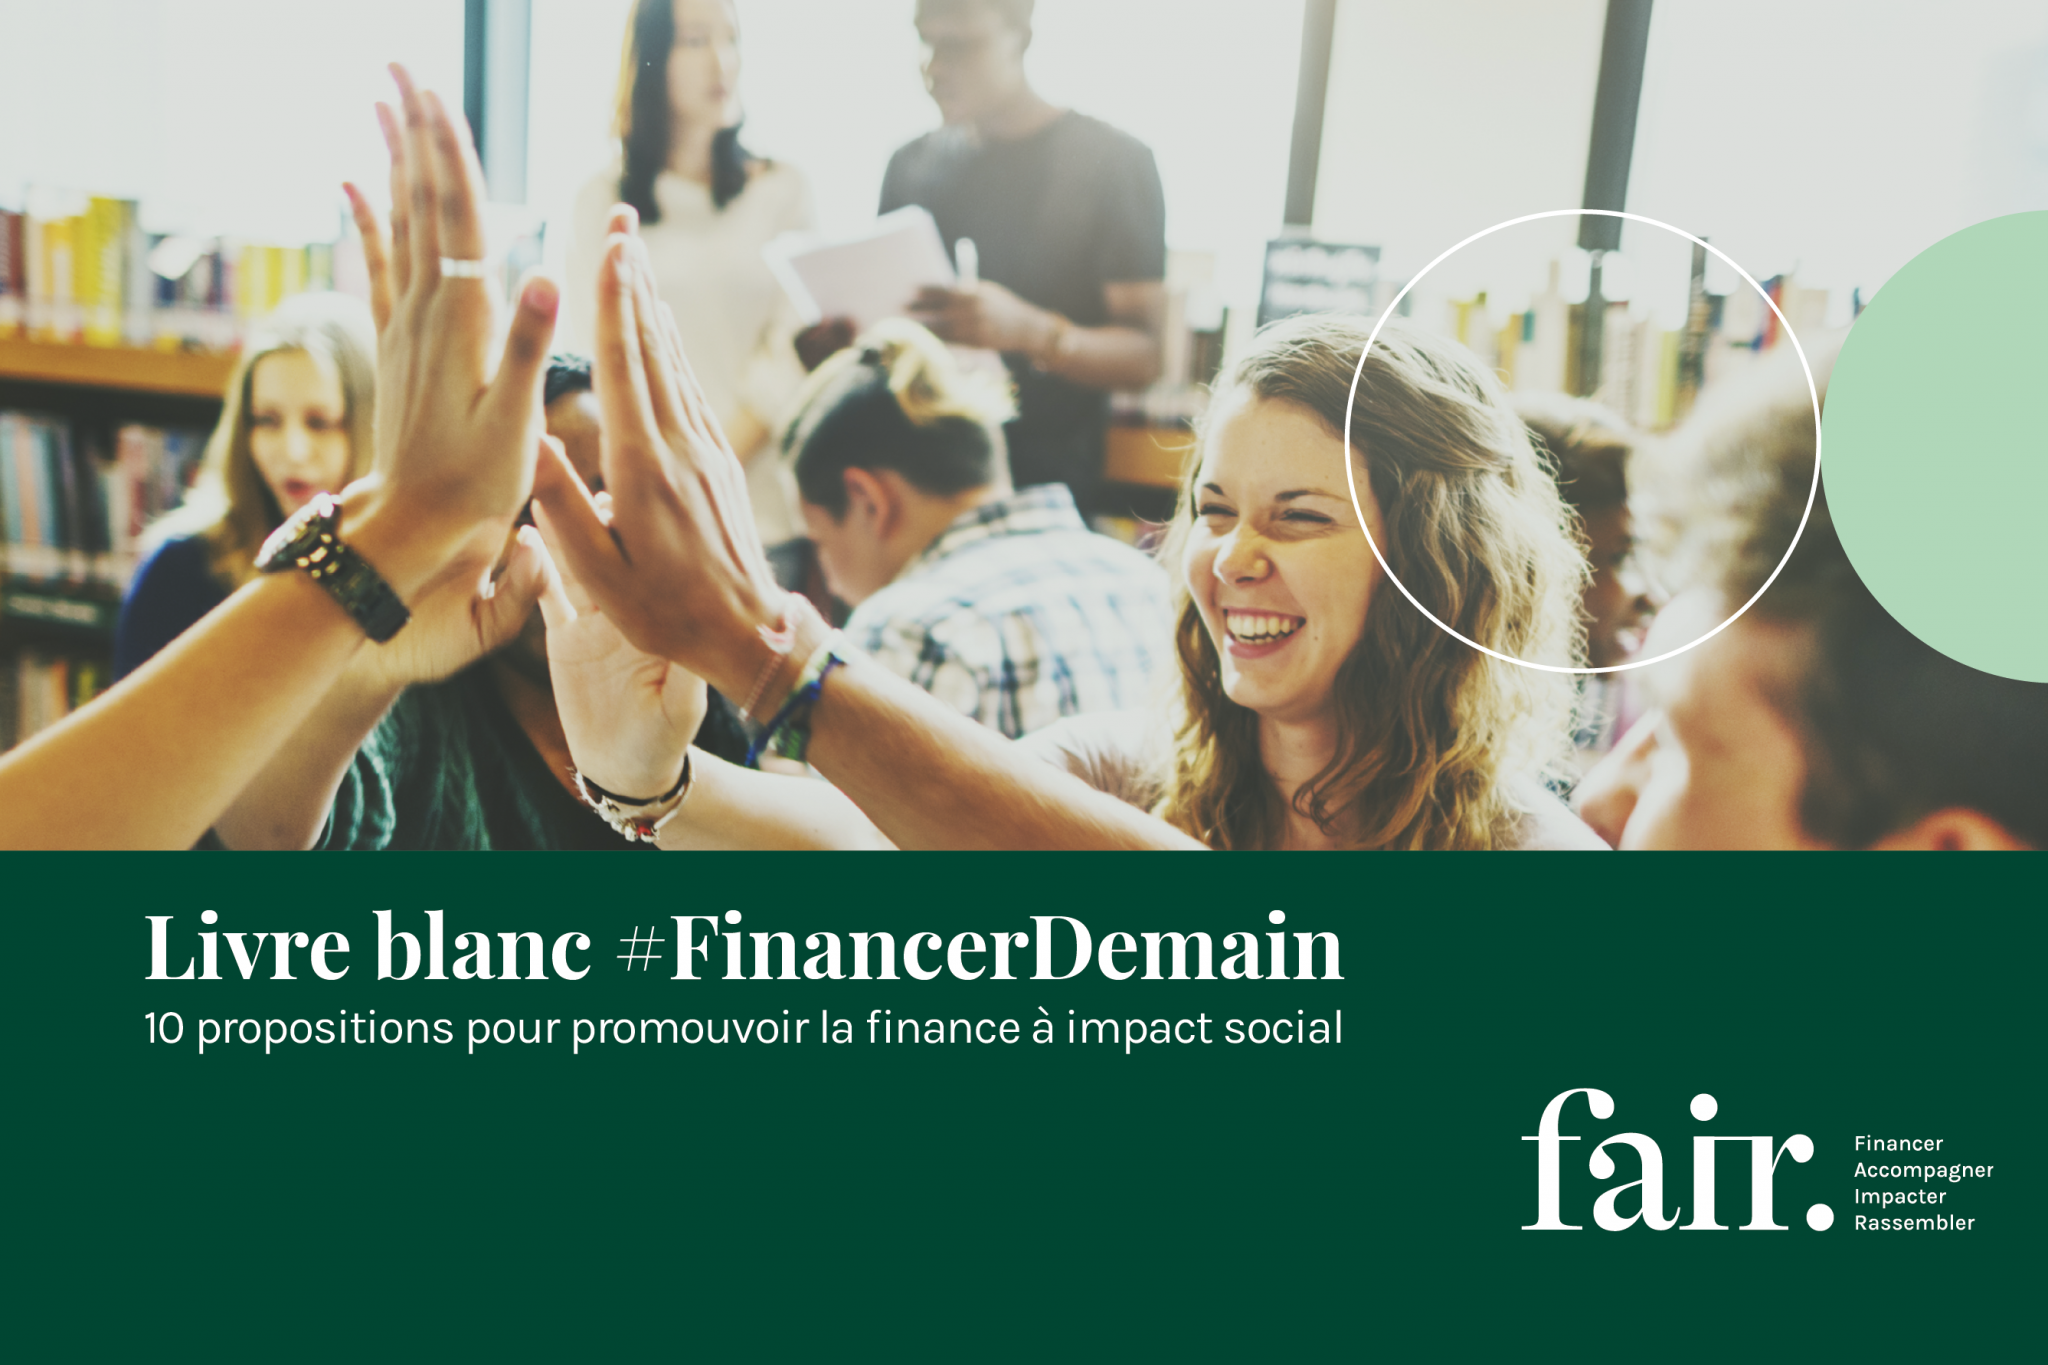 Livre blanc de Fair : 10 propositions pour développer la finance à impact social